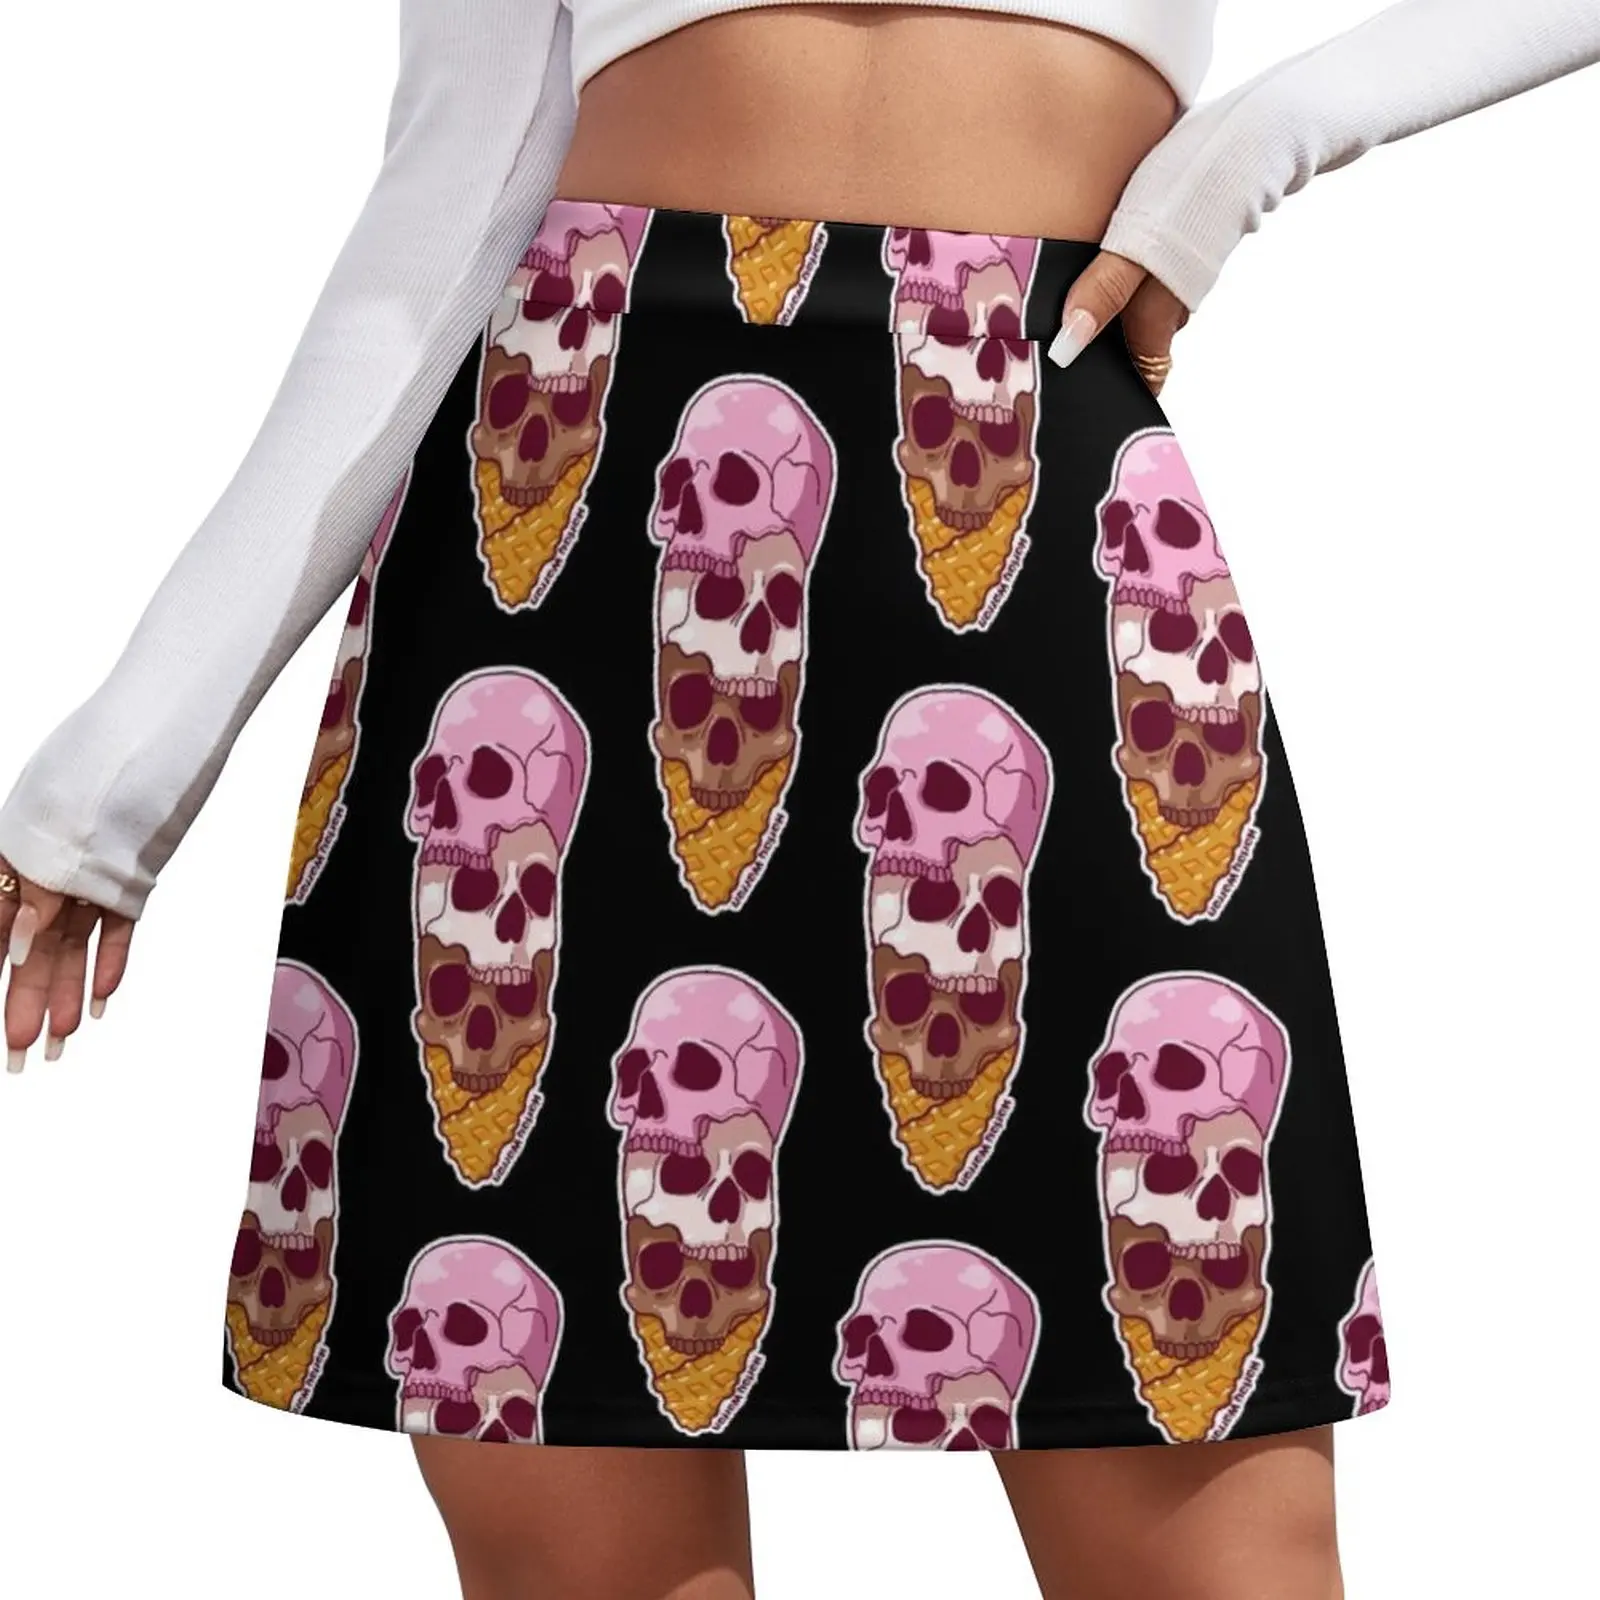 Skull Cone Mini Skirt Woman skirt women's stylish skirts